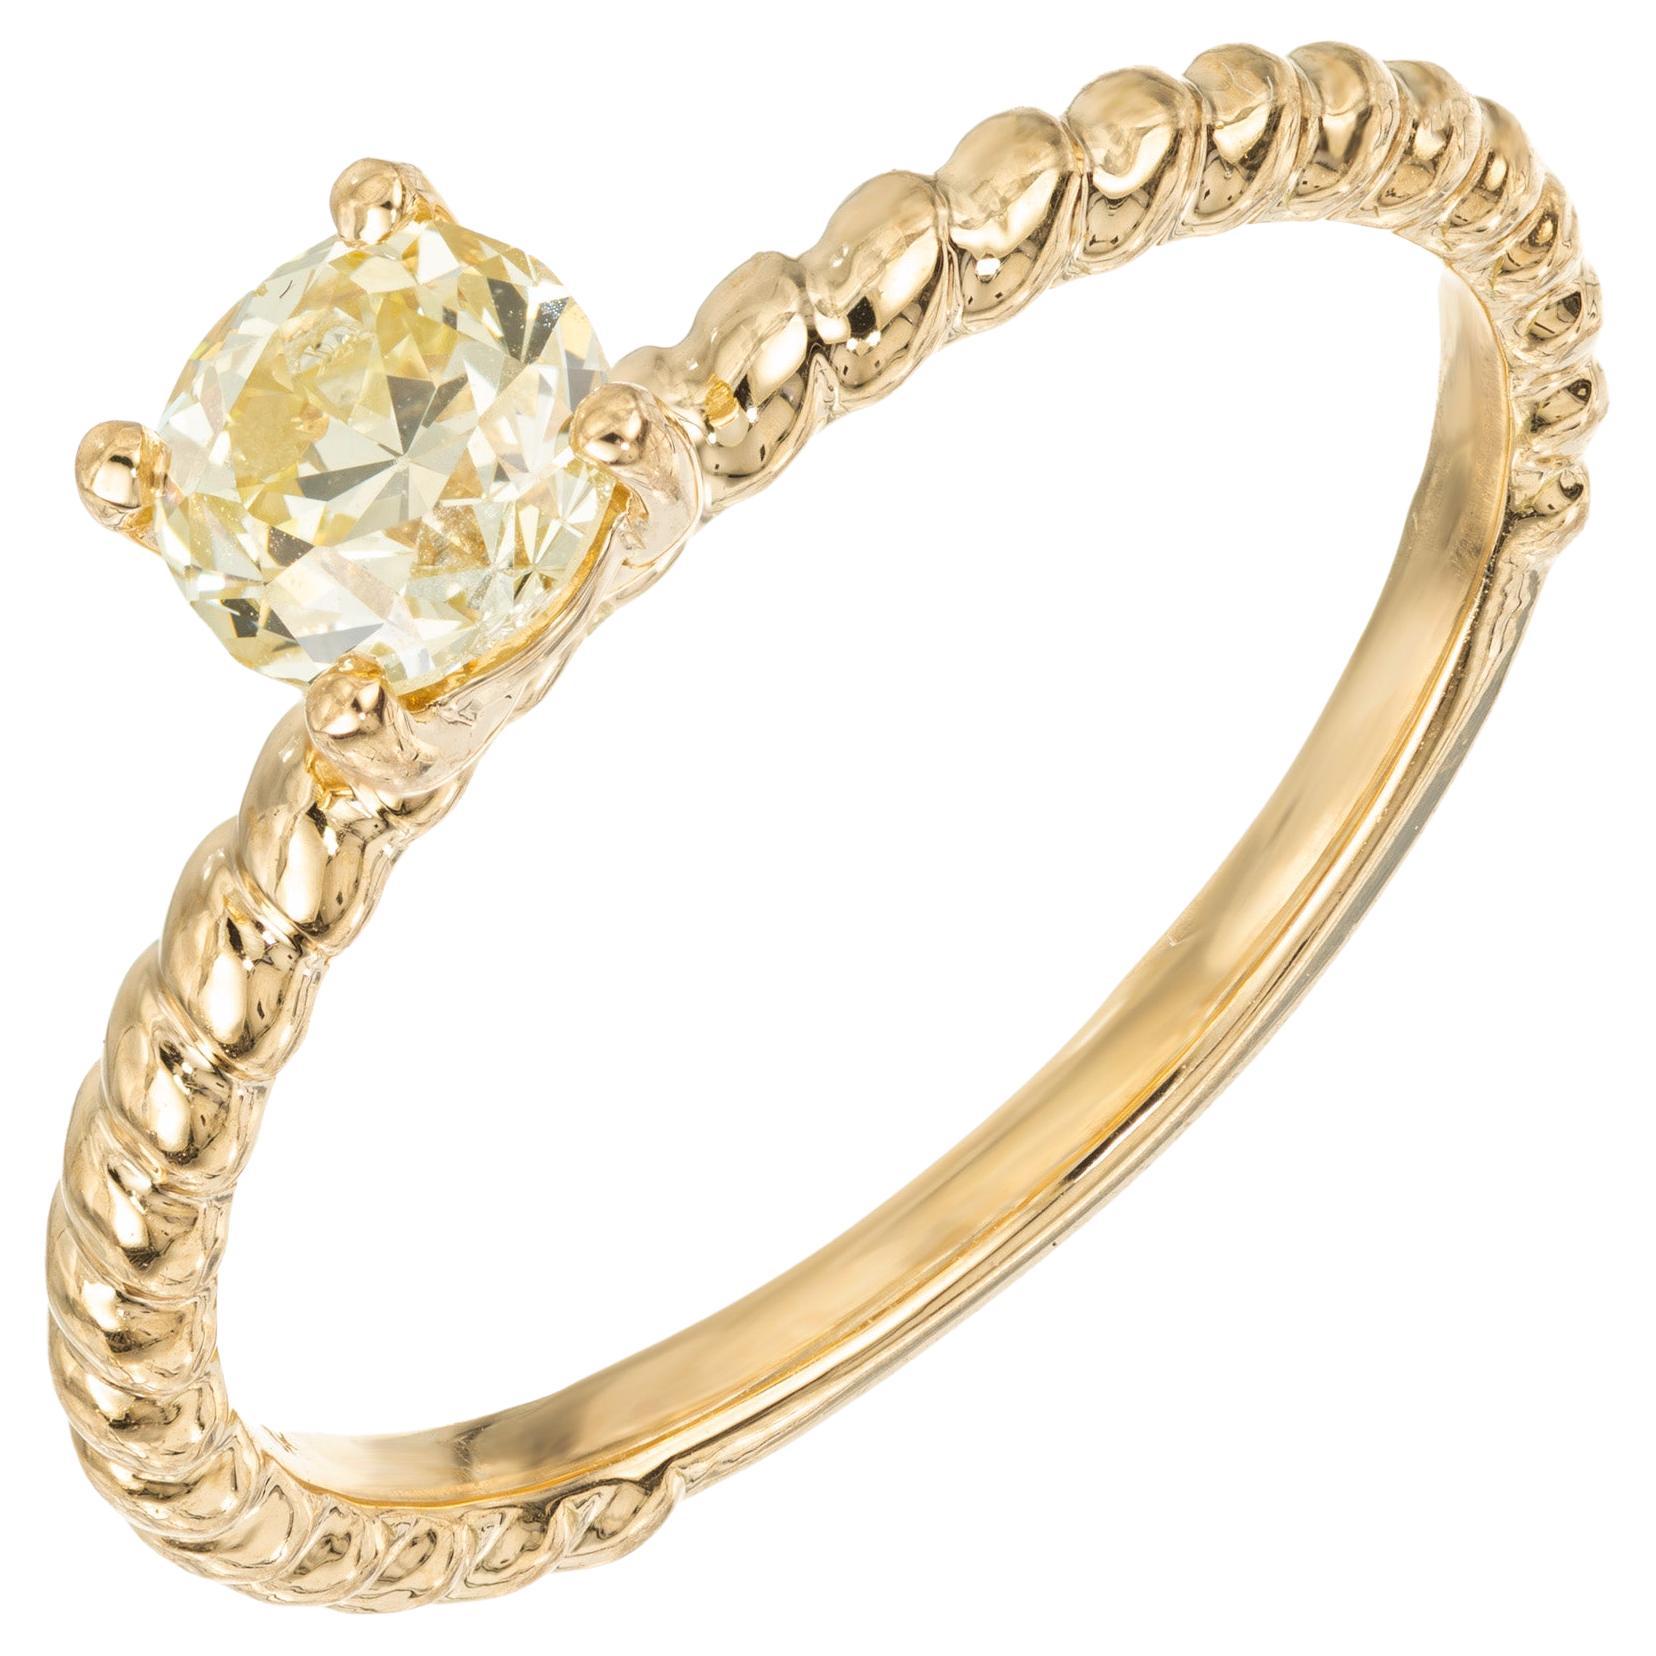 Peter Suchy GIA zertifiziert .56 Karat runder Diamant Gelbgold Verlobungsring